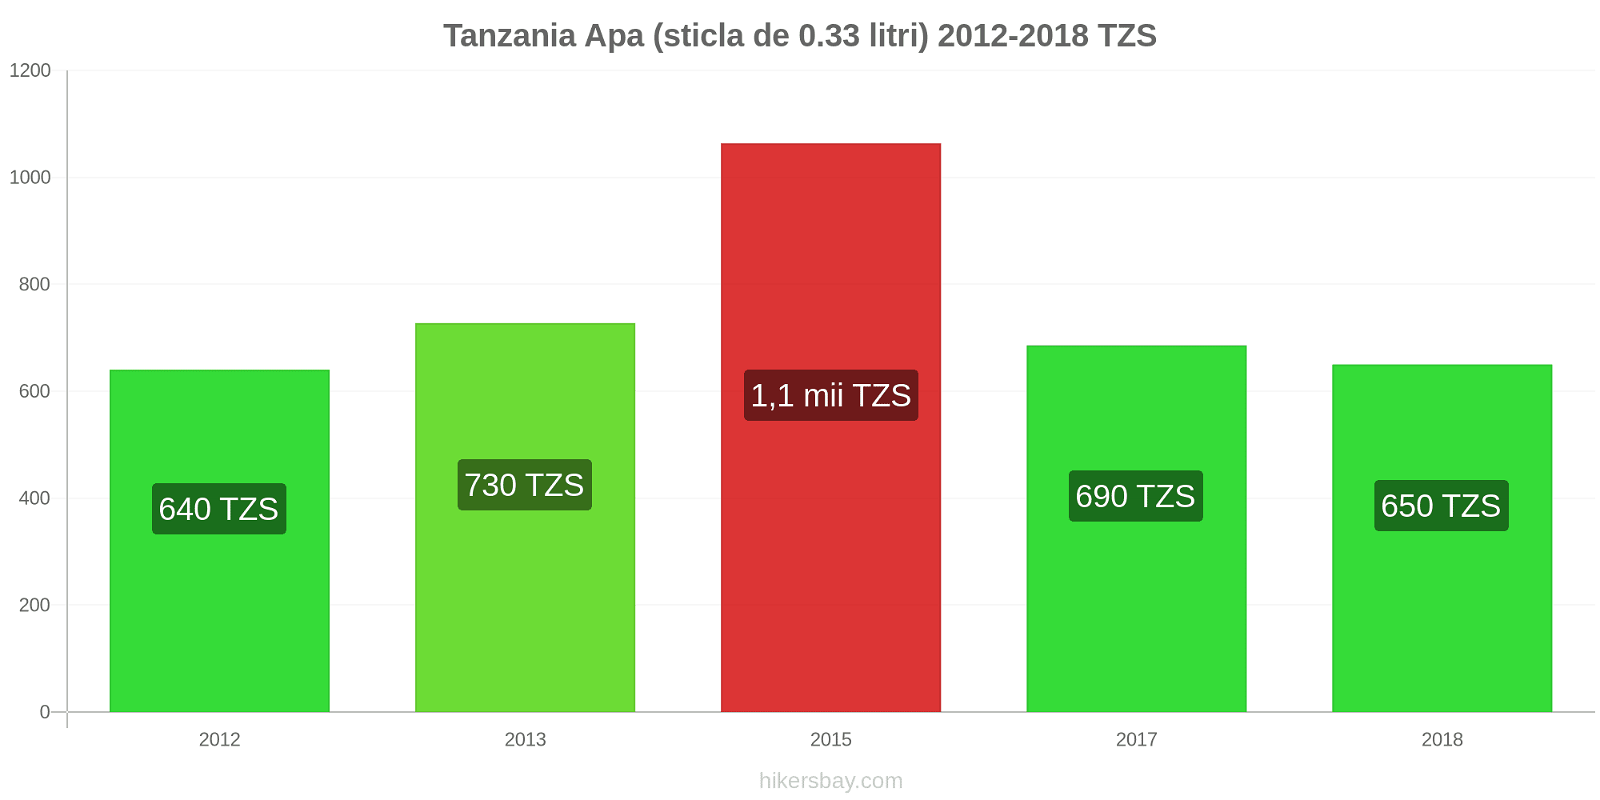 Tanzania schimbări de prețuri Apa (sticla de 0.33 litri) hikersbay.com